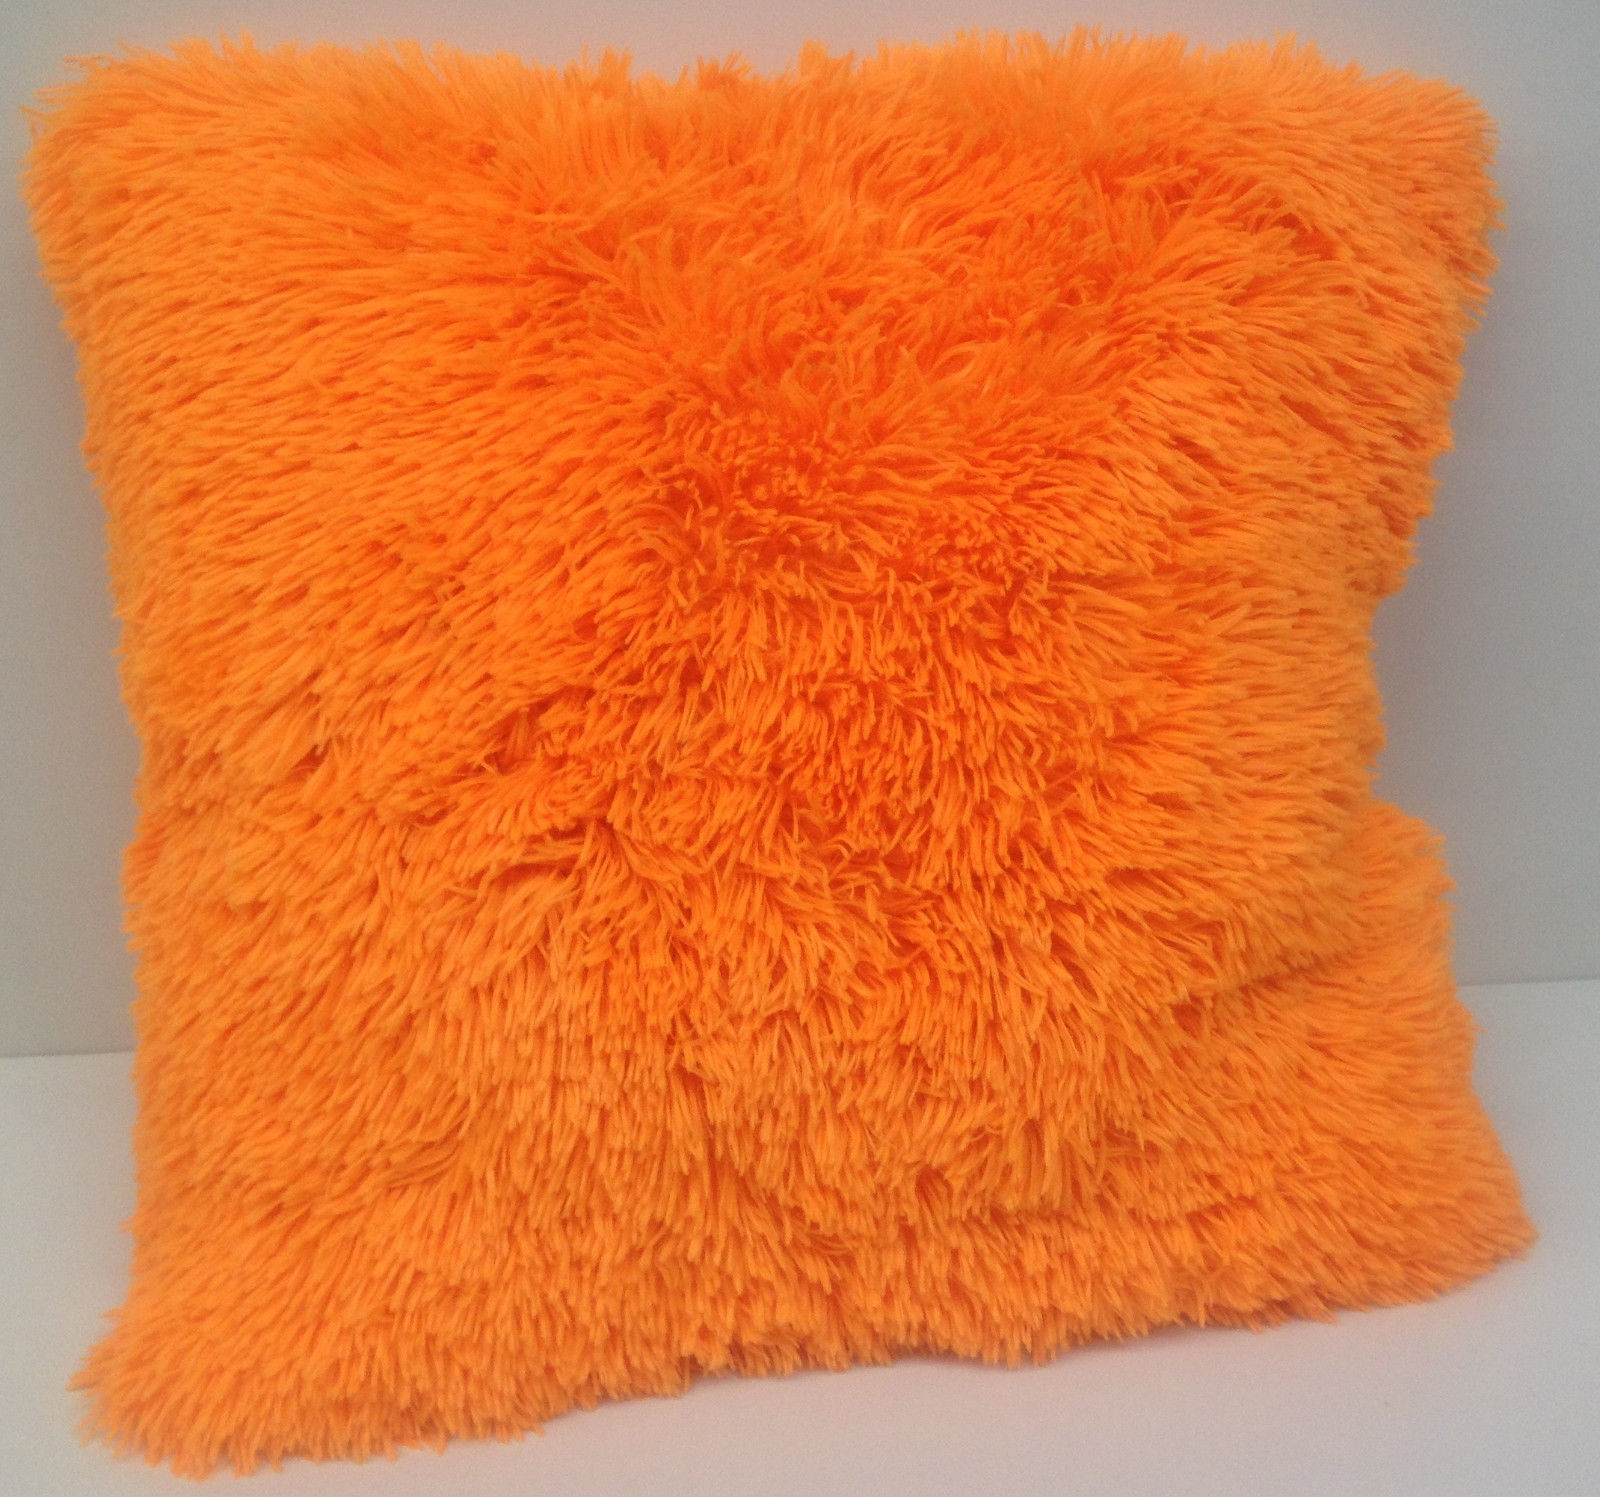 bright orange throw pillows